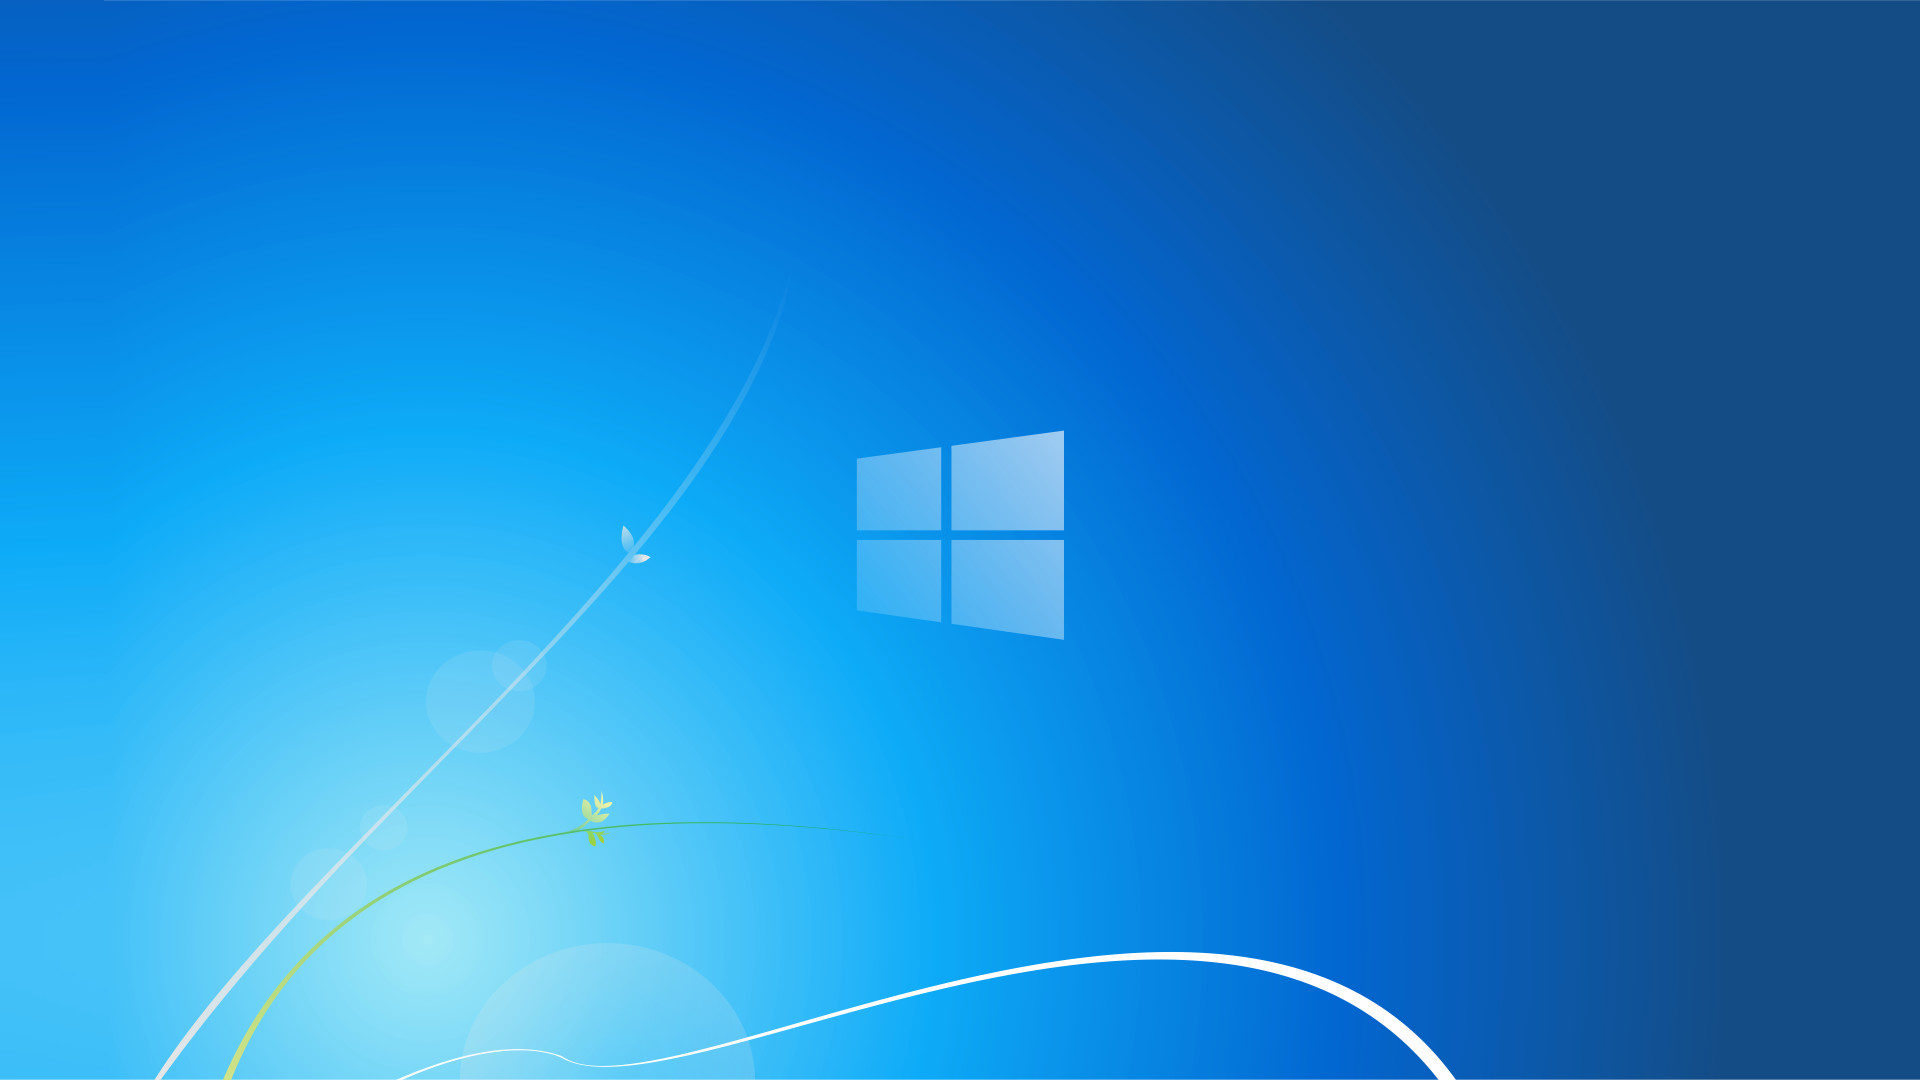 Microsoft Windows Background Image